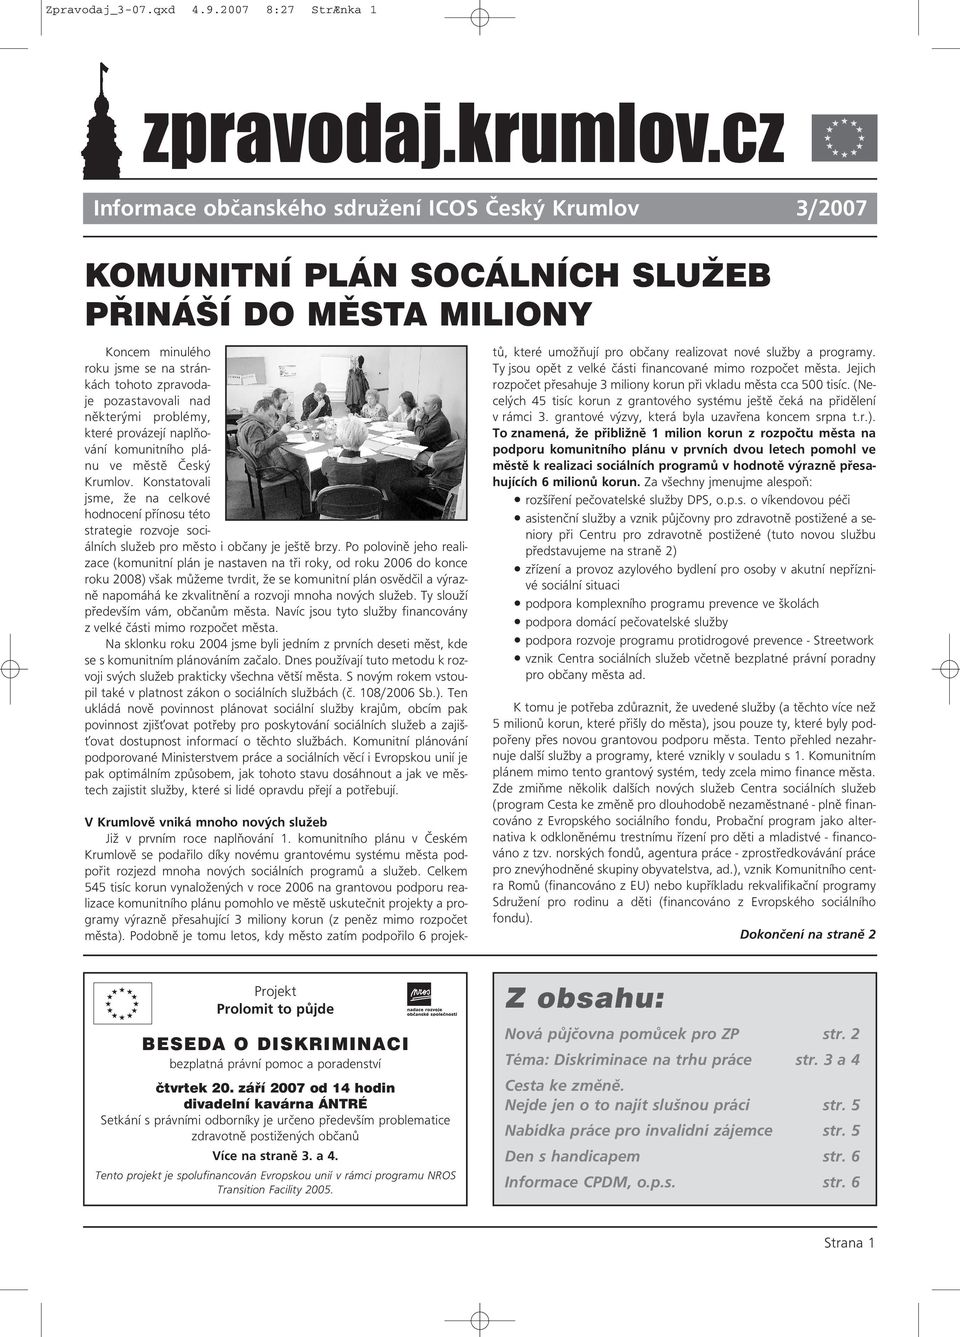 pozastavovali nad některými problémy, které provázejí naplňování komunitního plánu ve městě Český Krumlov.